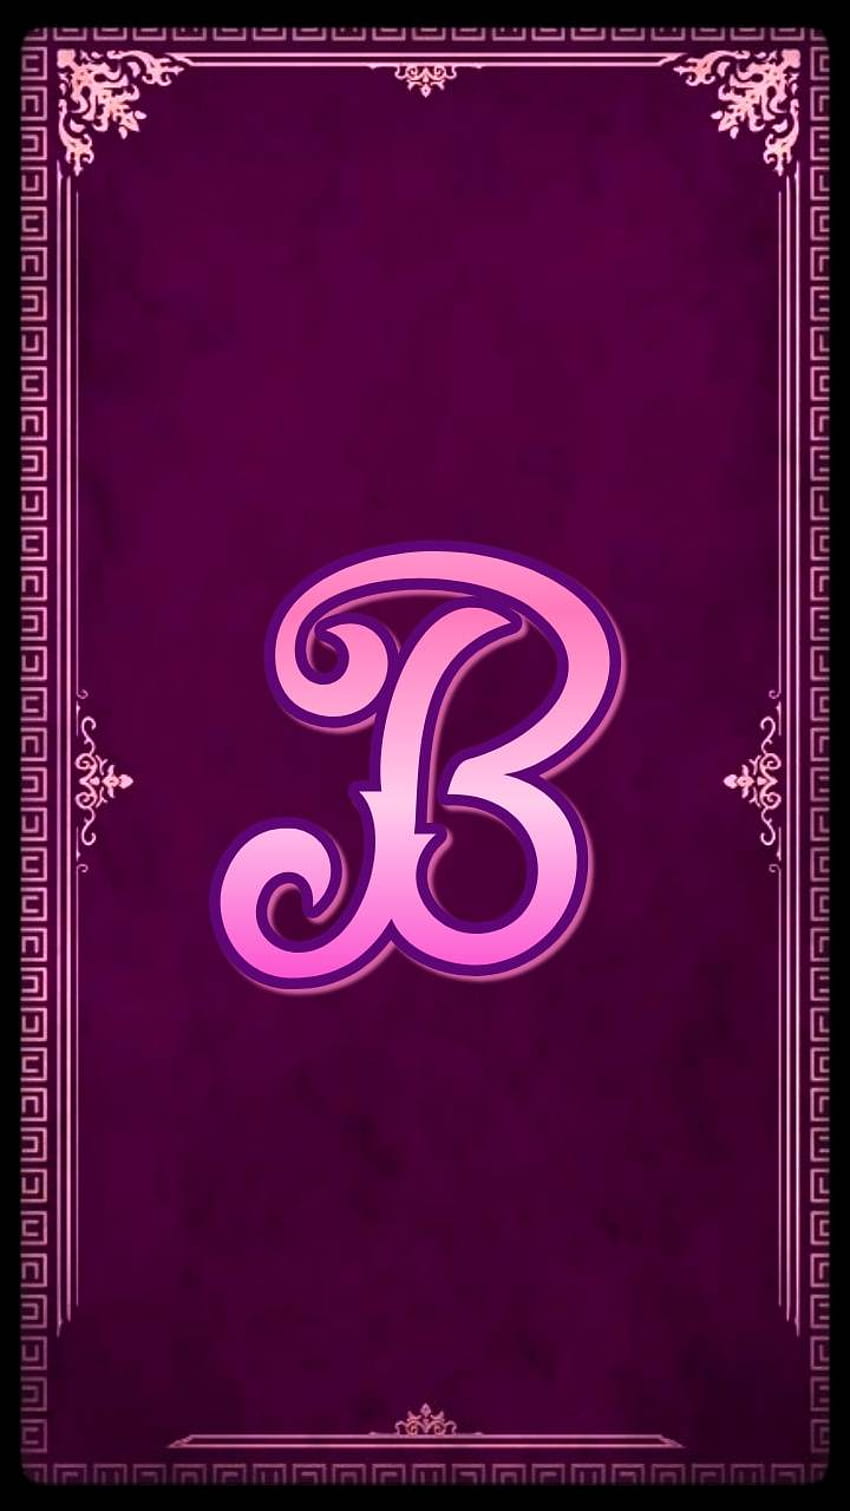 The Purple B, Cute Letter B HD phone wallpaper | Pxfuel